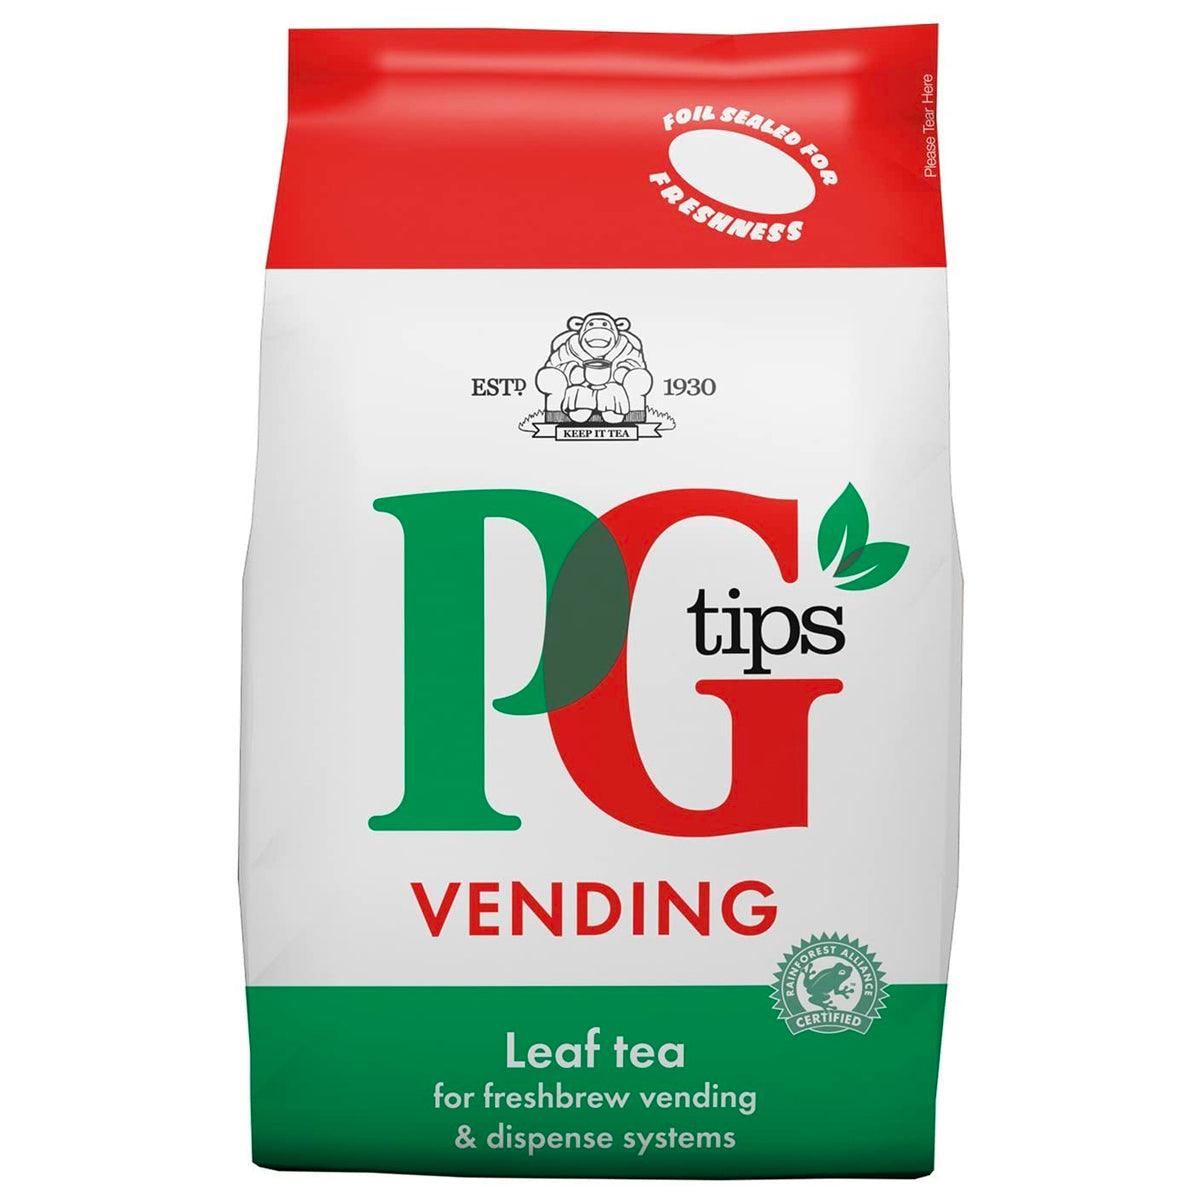 PG Tips Leaf Tea For Vending - 1kg Bag - Vending Superstore